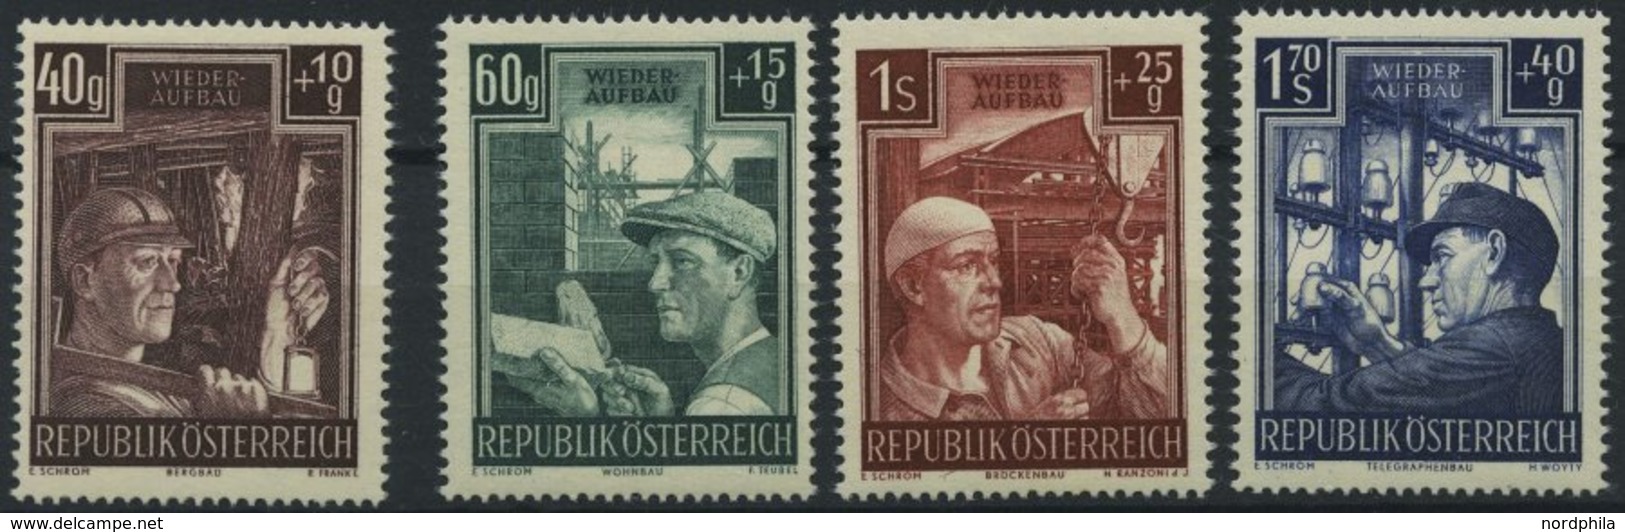 ÖSTERREICH 960-63 **, 1951, Wiederaufbau, Prachtsatz, Mi. 80.- - Used Stamps